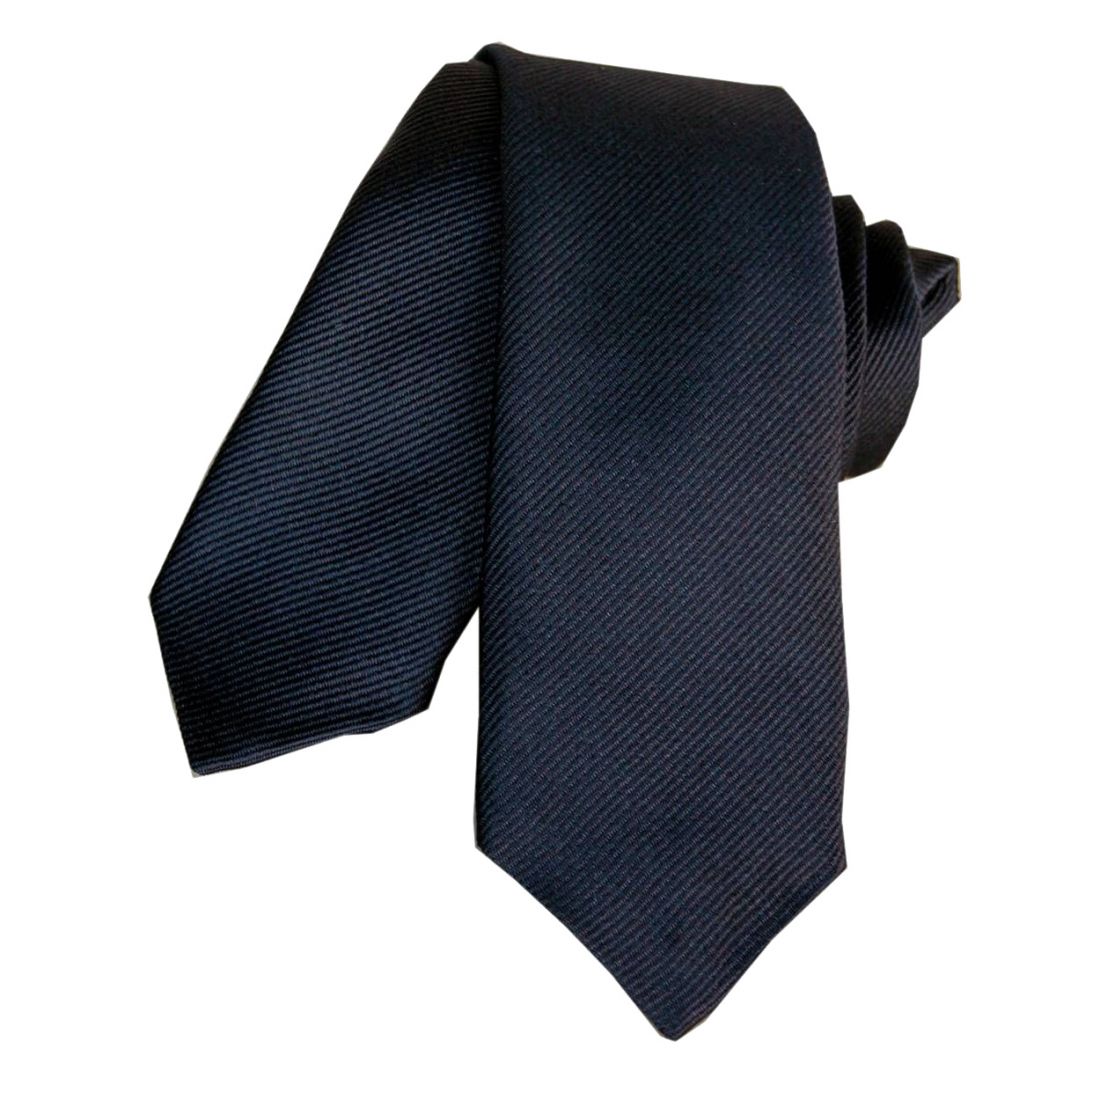 Cravate Segni Disegni Classique Slim Marine Segni et Disegni